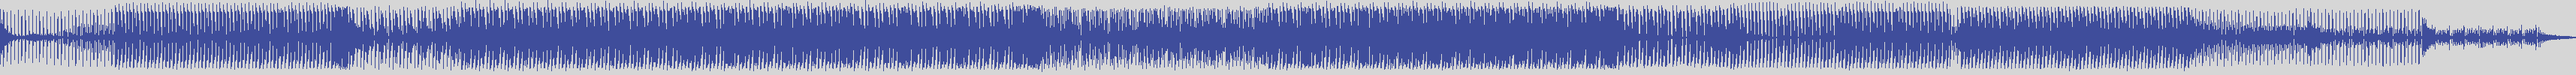 noclouds_chillout [NOC064] Jack Johnson - Pirdop [Original Mix] audio wave form